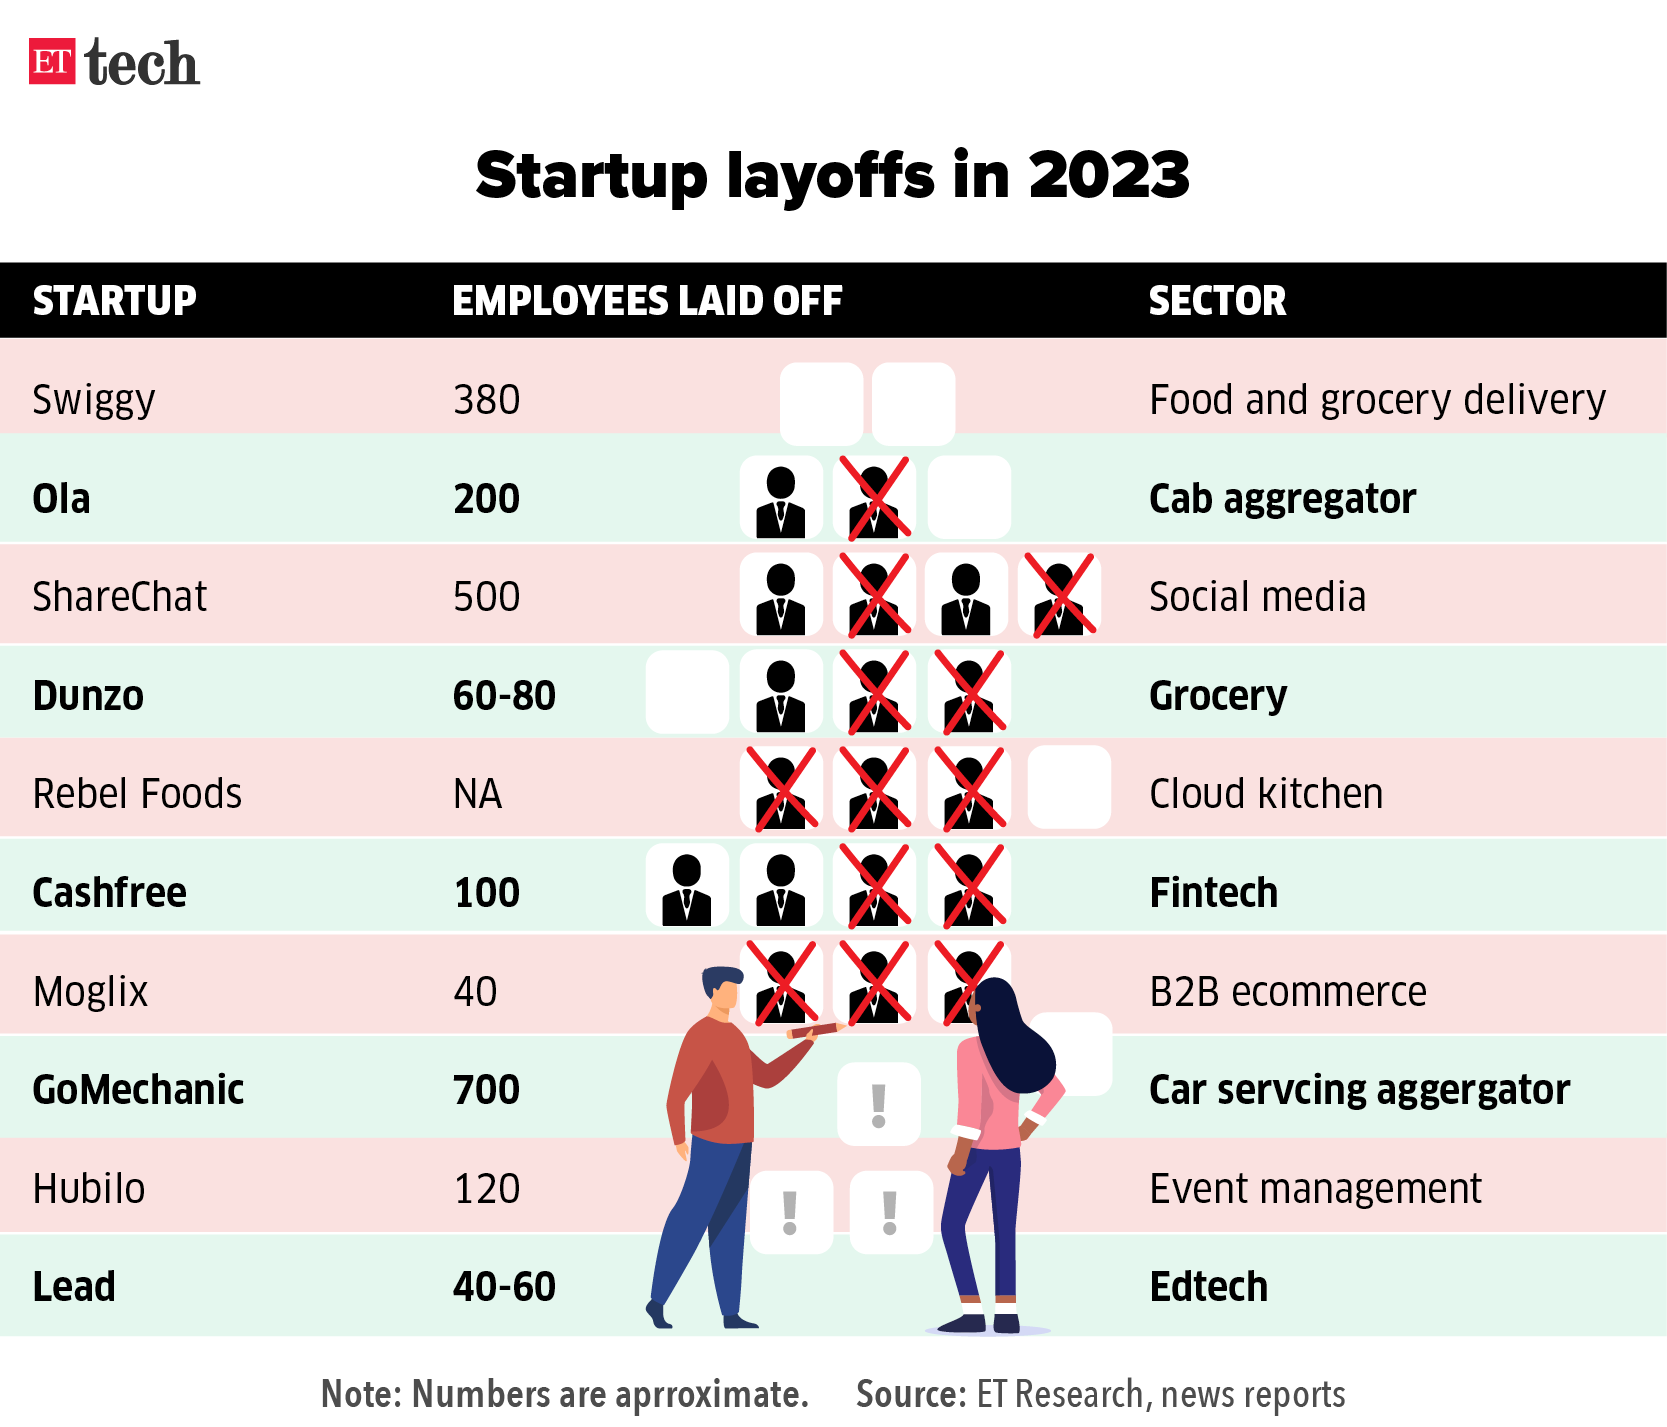 Startup layoffs in 2023